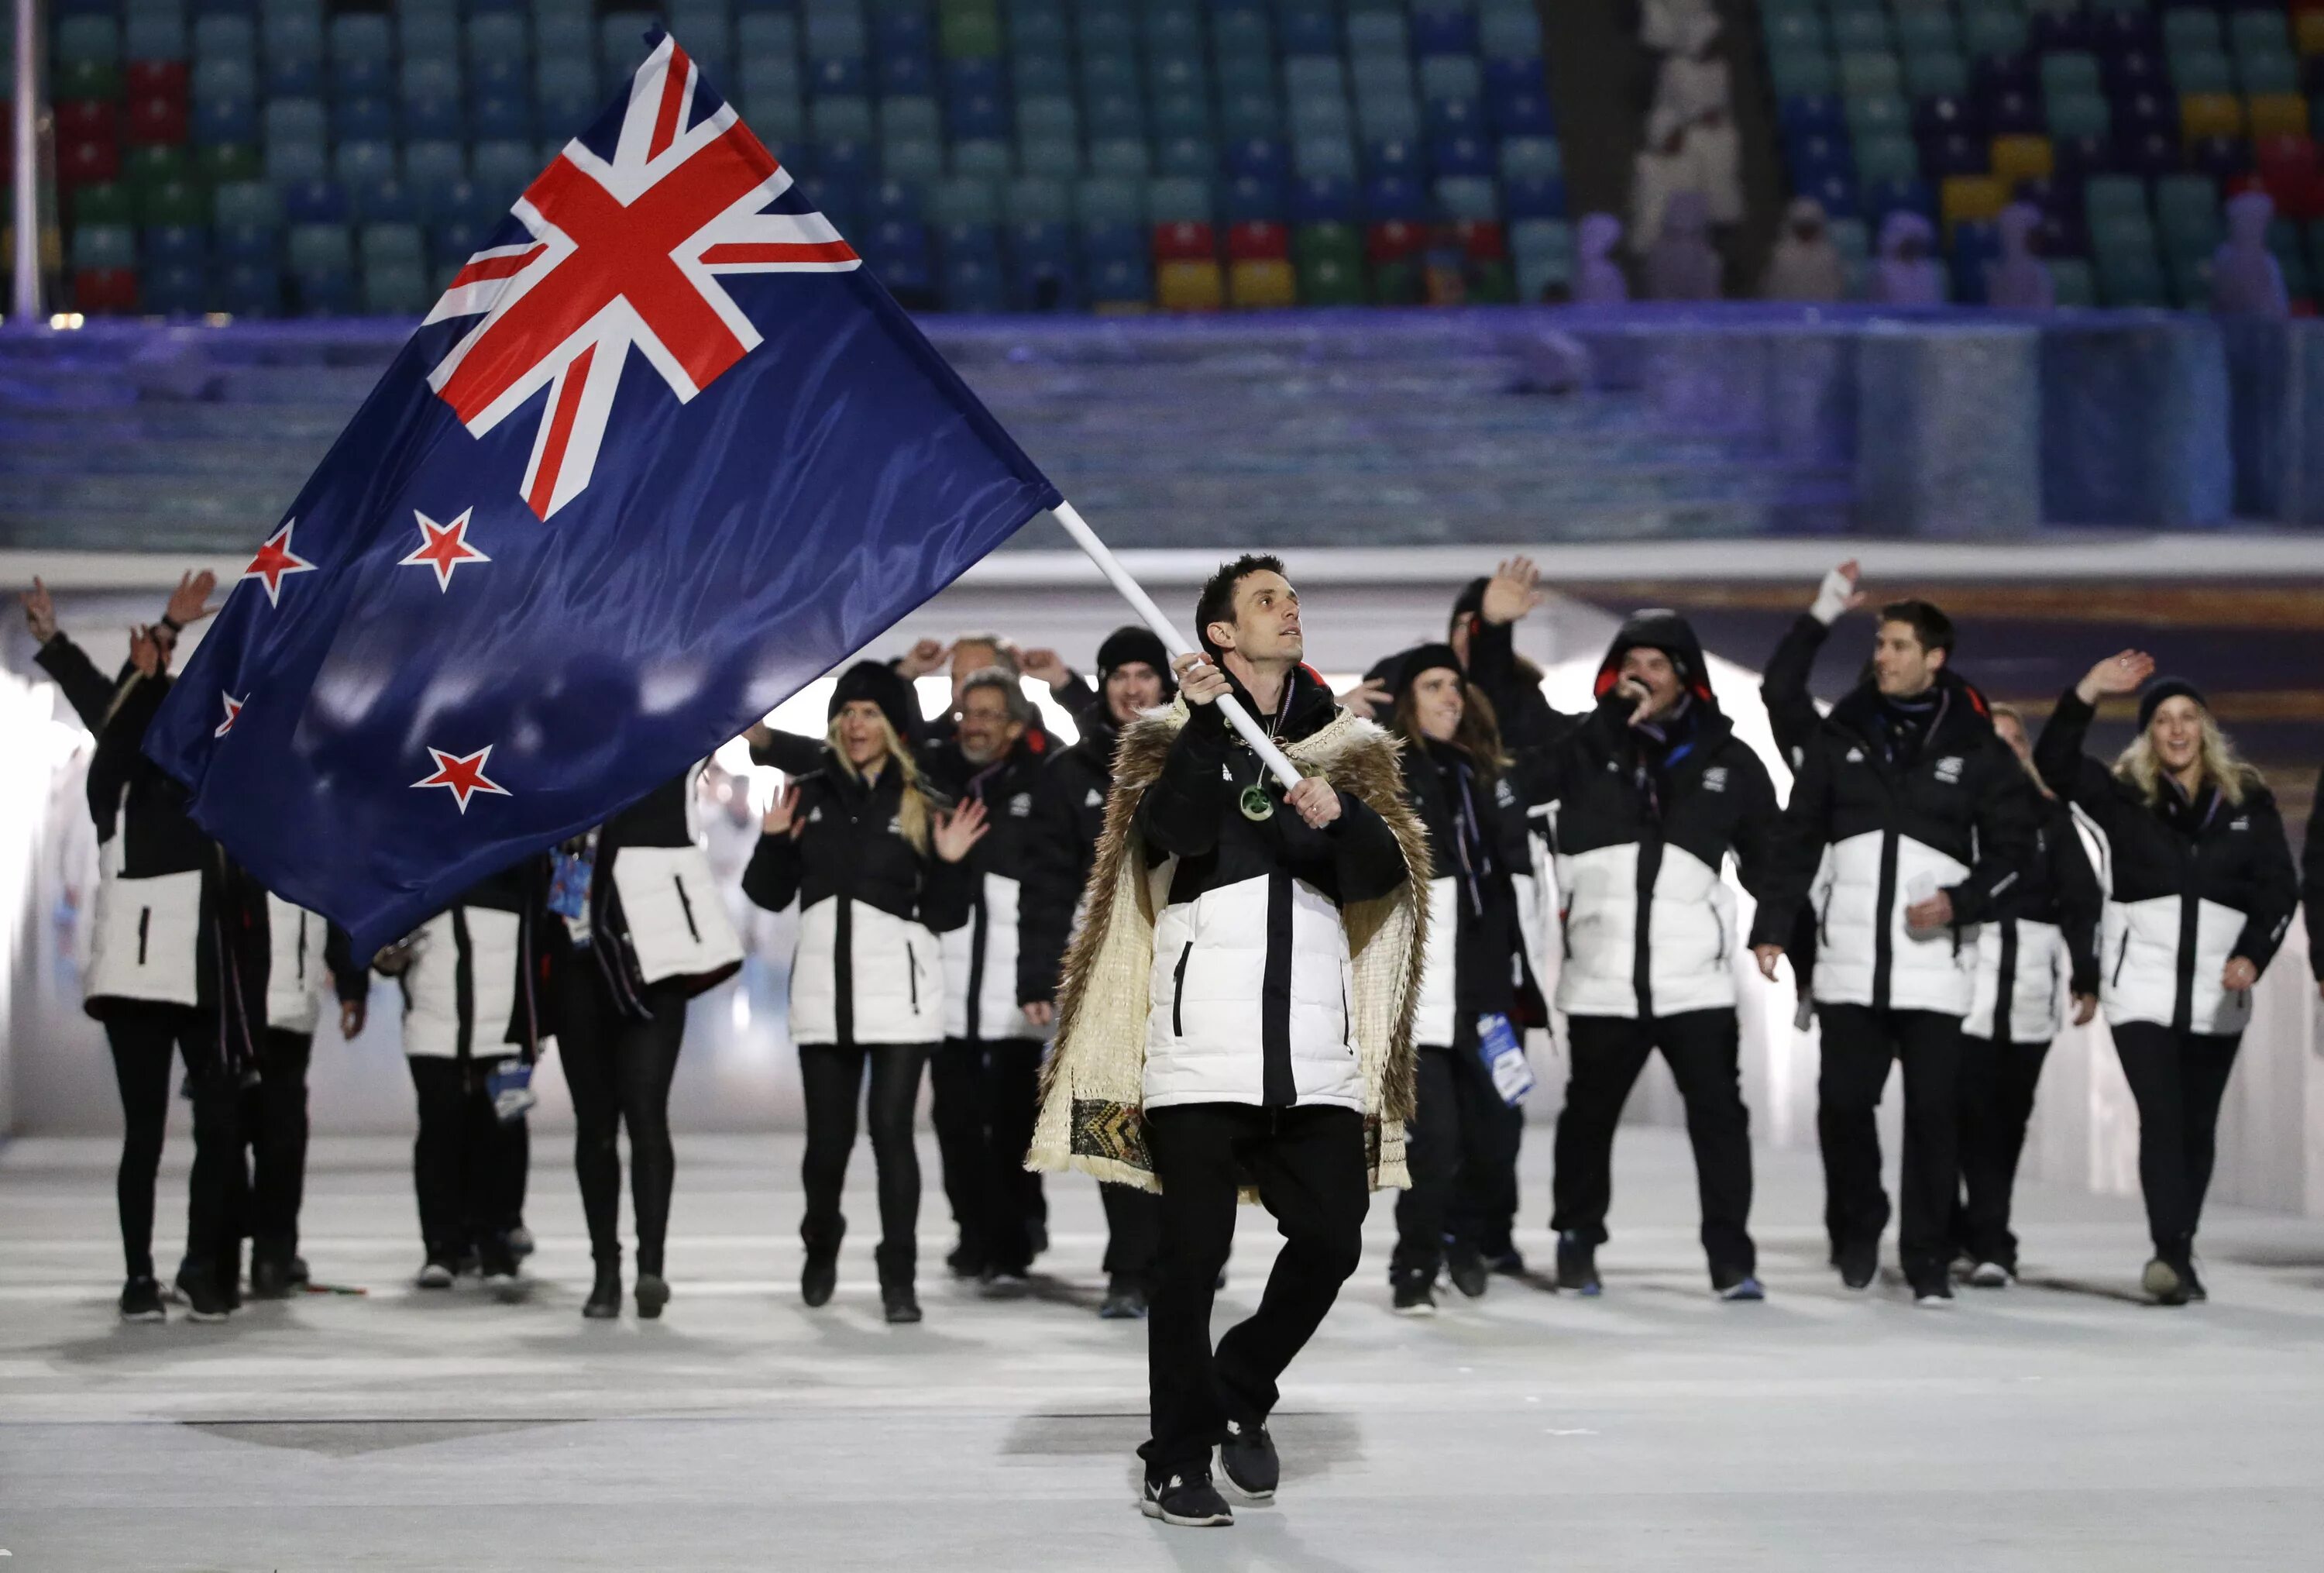 Делегации на Олимпийских играх. Зимние Олимпийские игры 2014. Олимпийская сборная новой Зеландии. 23 зимних олимпийских игр